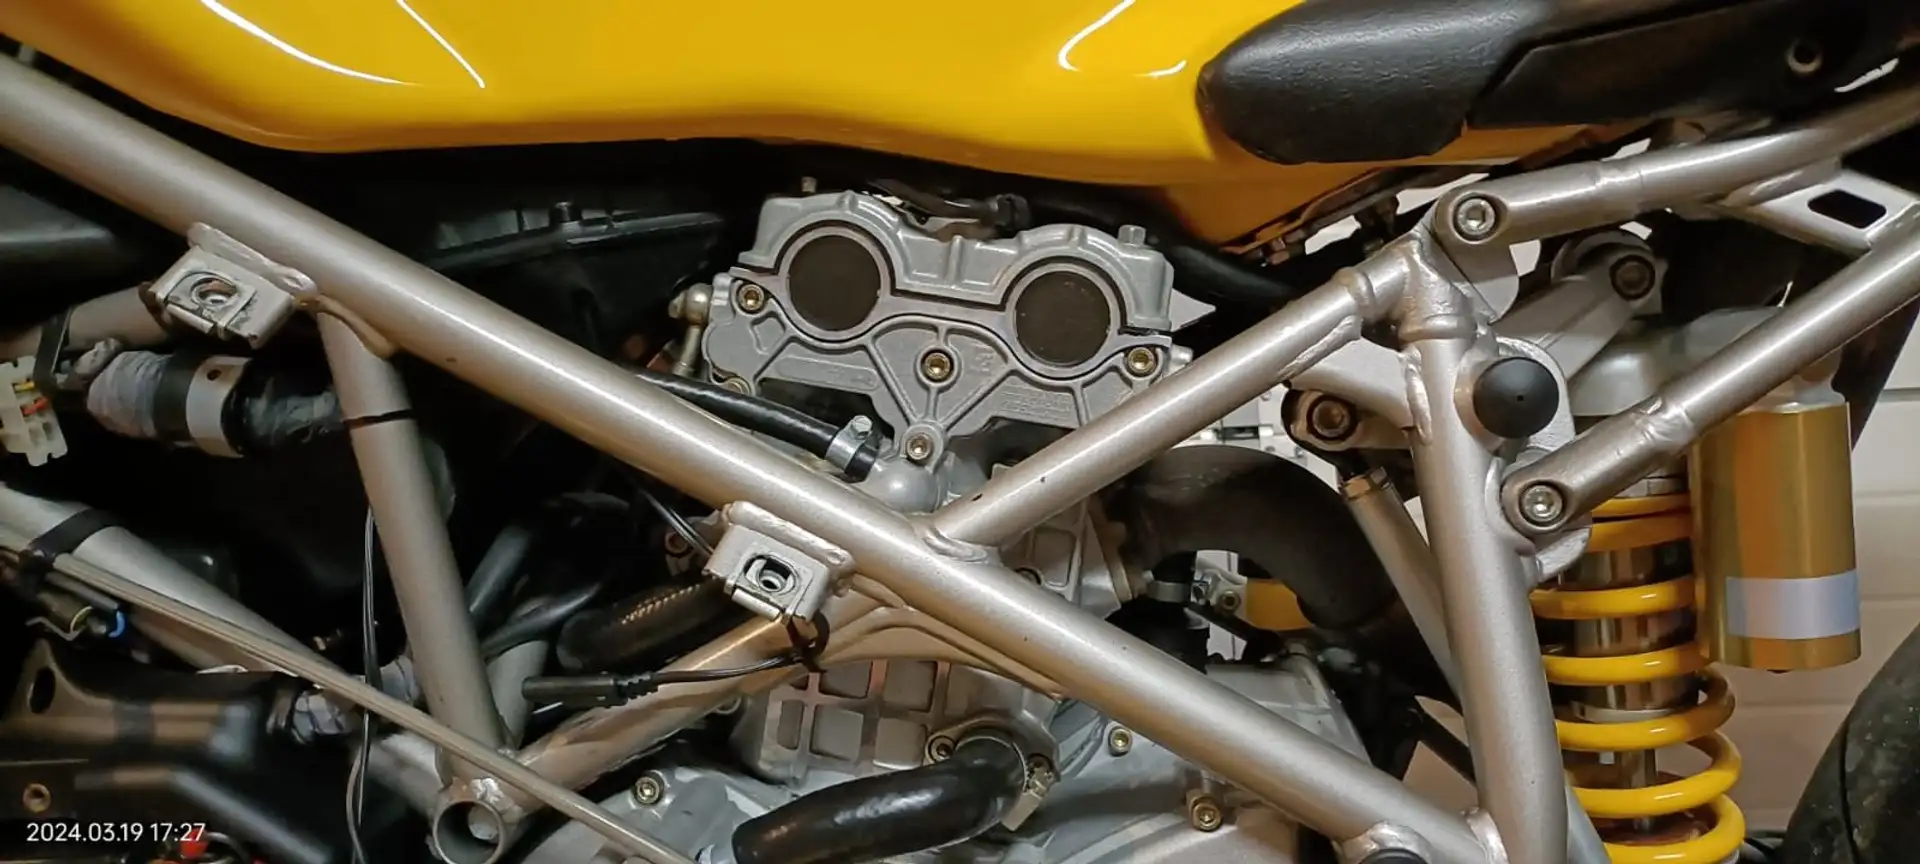 Ducati 749 Yellow - 2